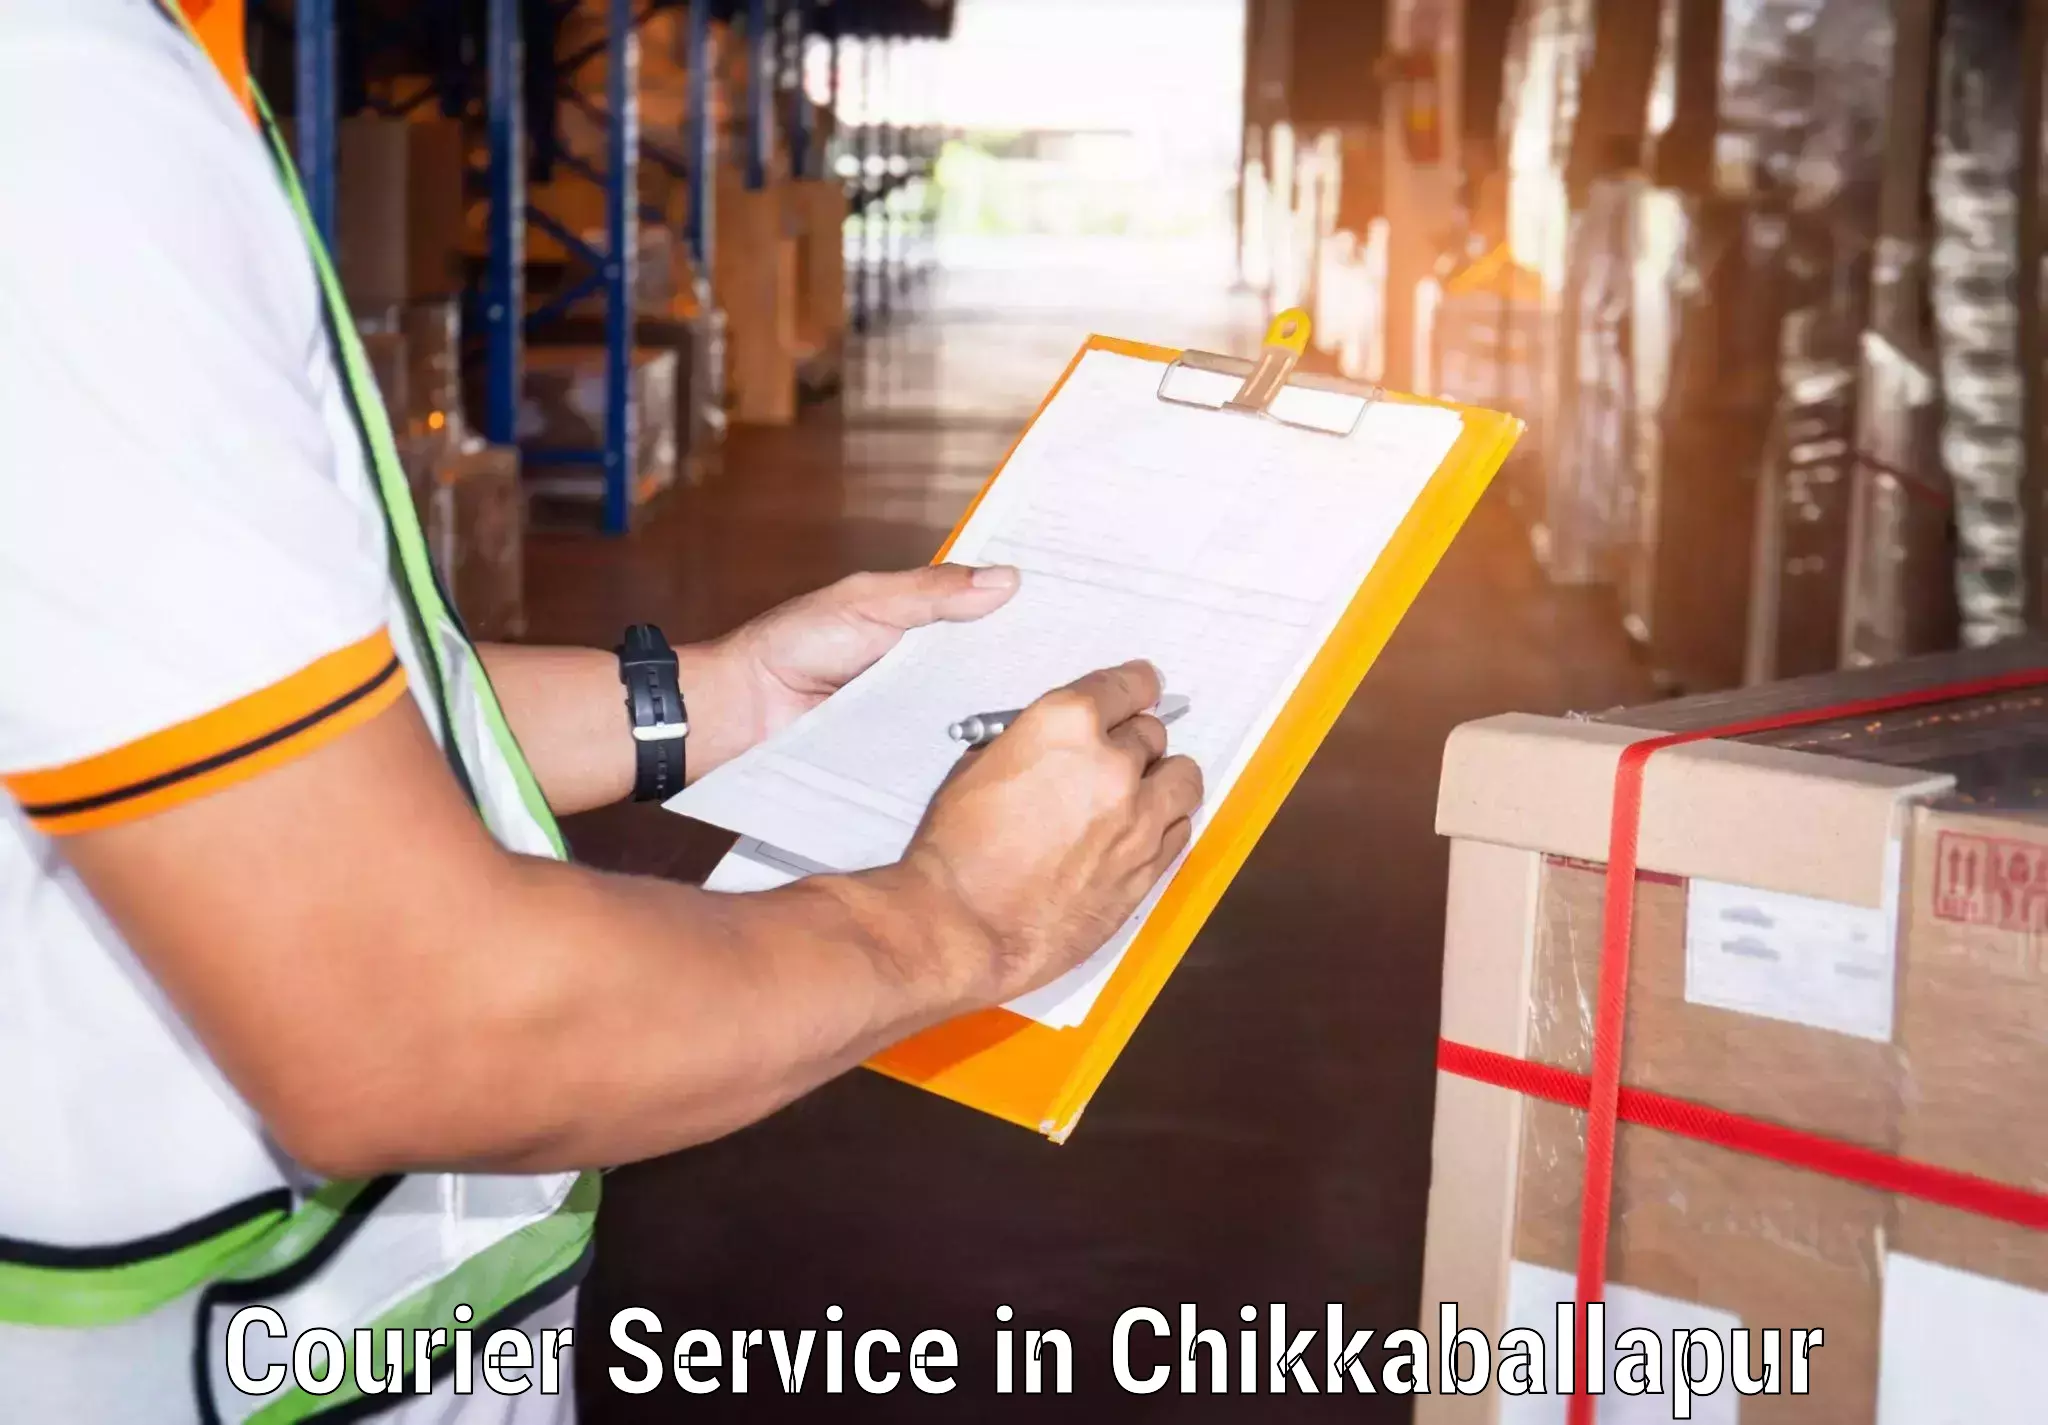 Courier services in Chikkaballapur